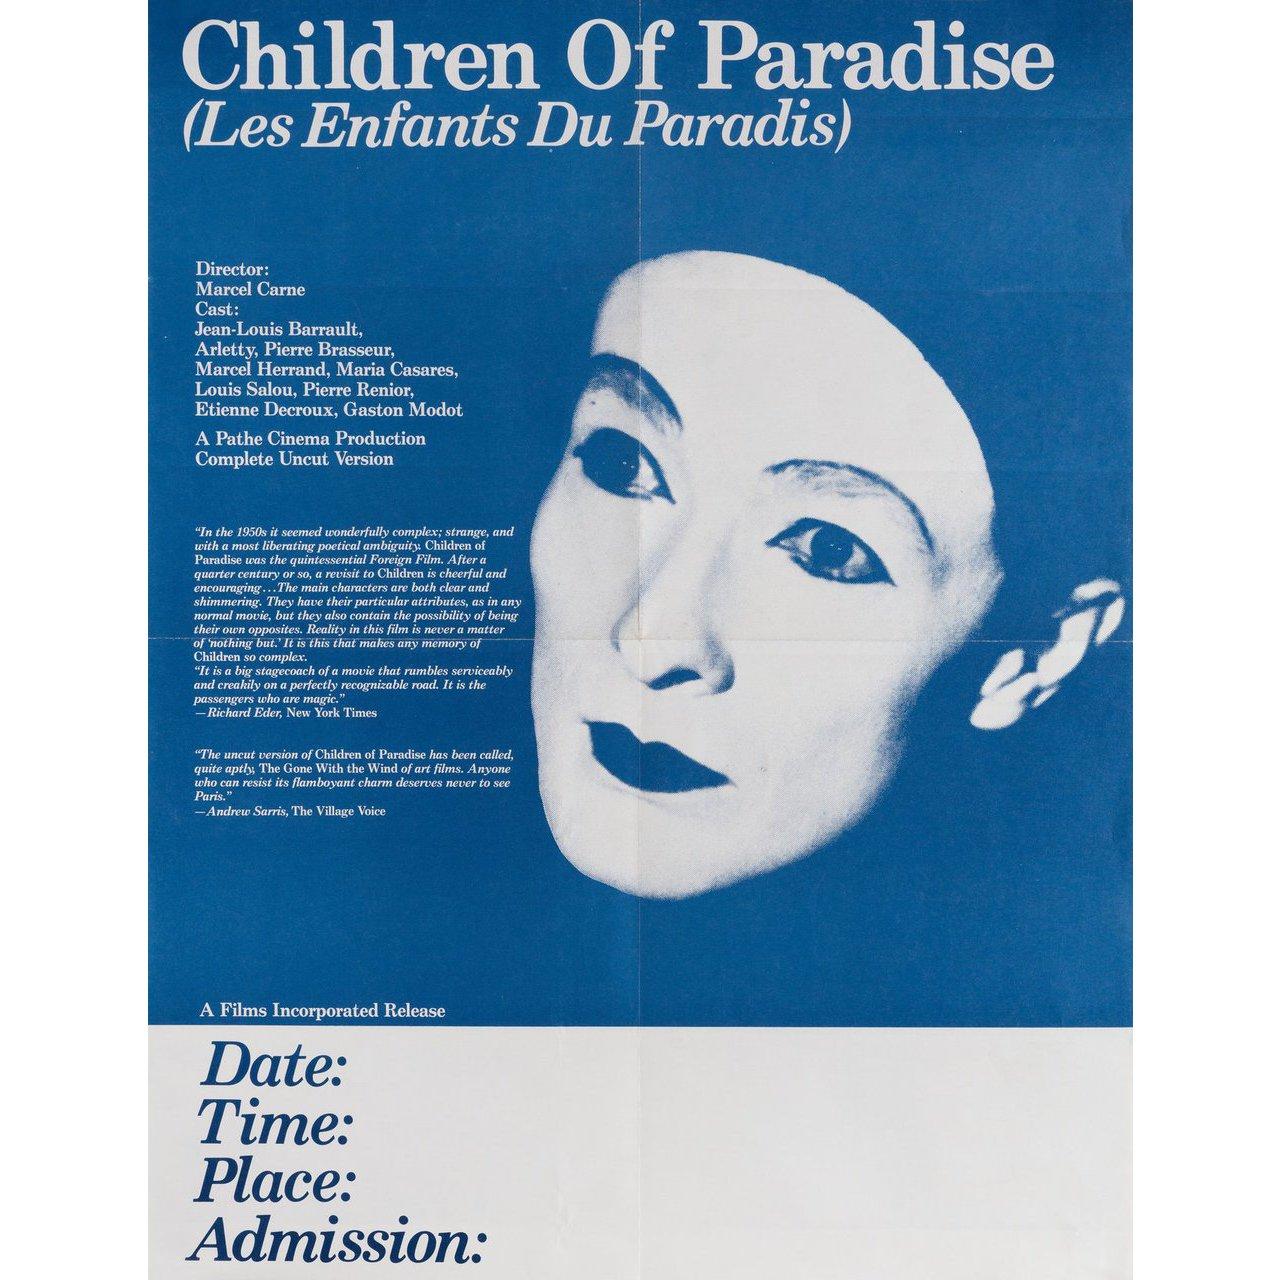 Originales US-Miniplakat aus den 1970er Jahren für den Film Les Enfants du Paradis (Kinder des Paradieses) von 1945 unter der Regie von Marcel Carne mit Arletty / Jean-Louis Barrault / Pierre Brasseur / Pierre Renoir. Sehr guter Zustand, gefaltet.